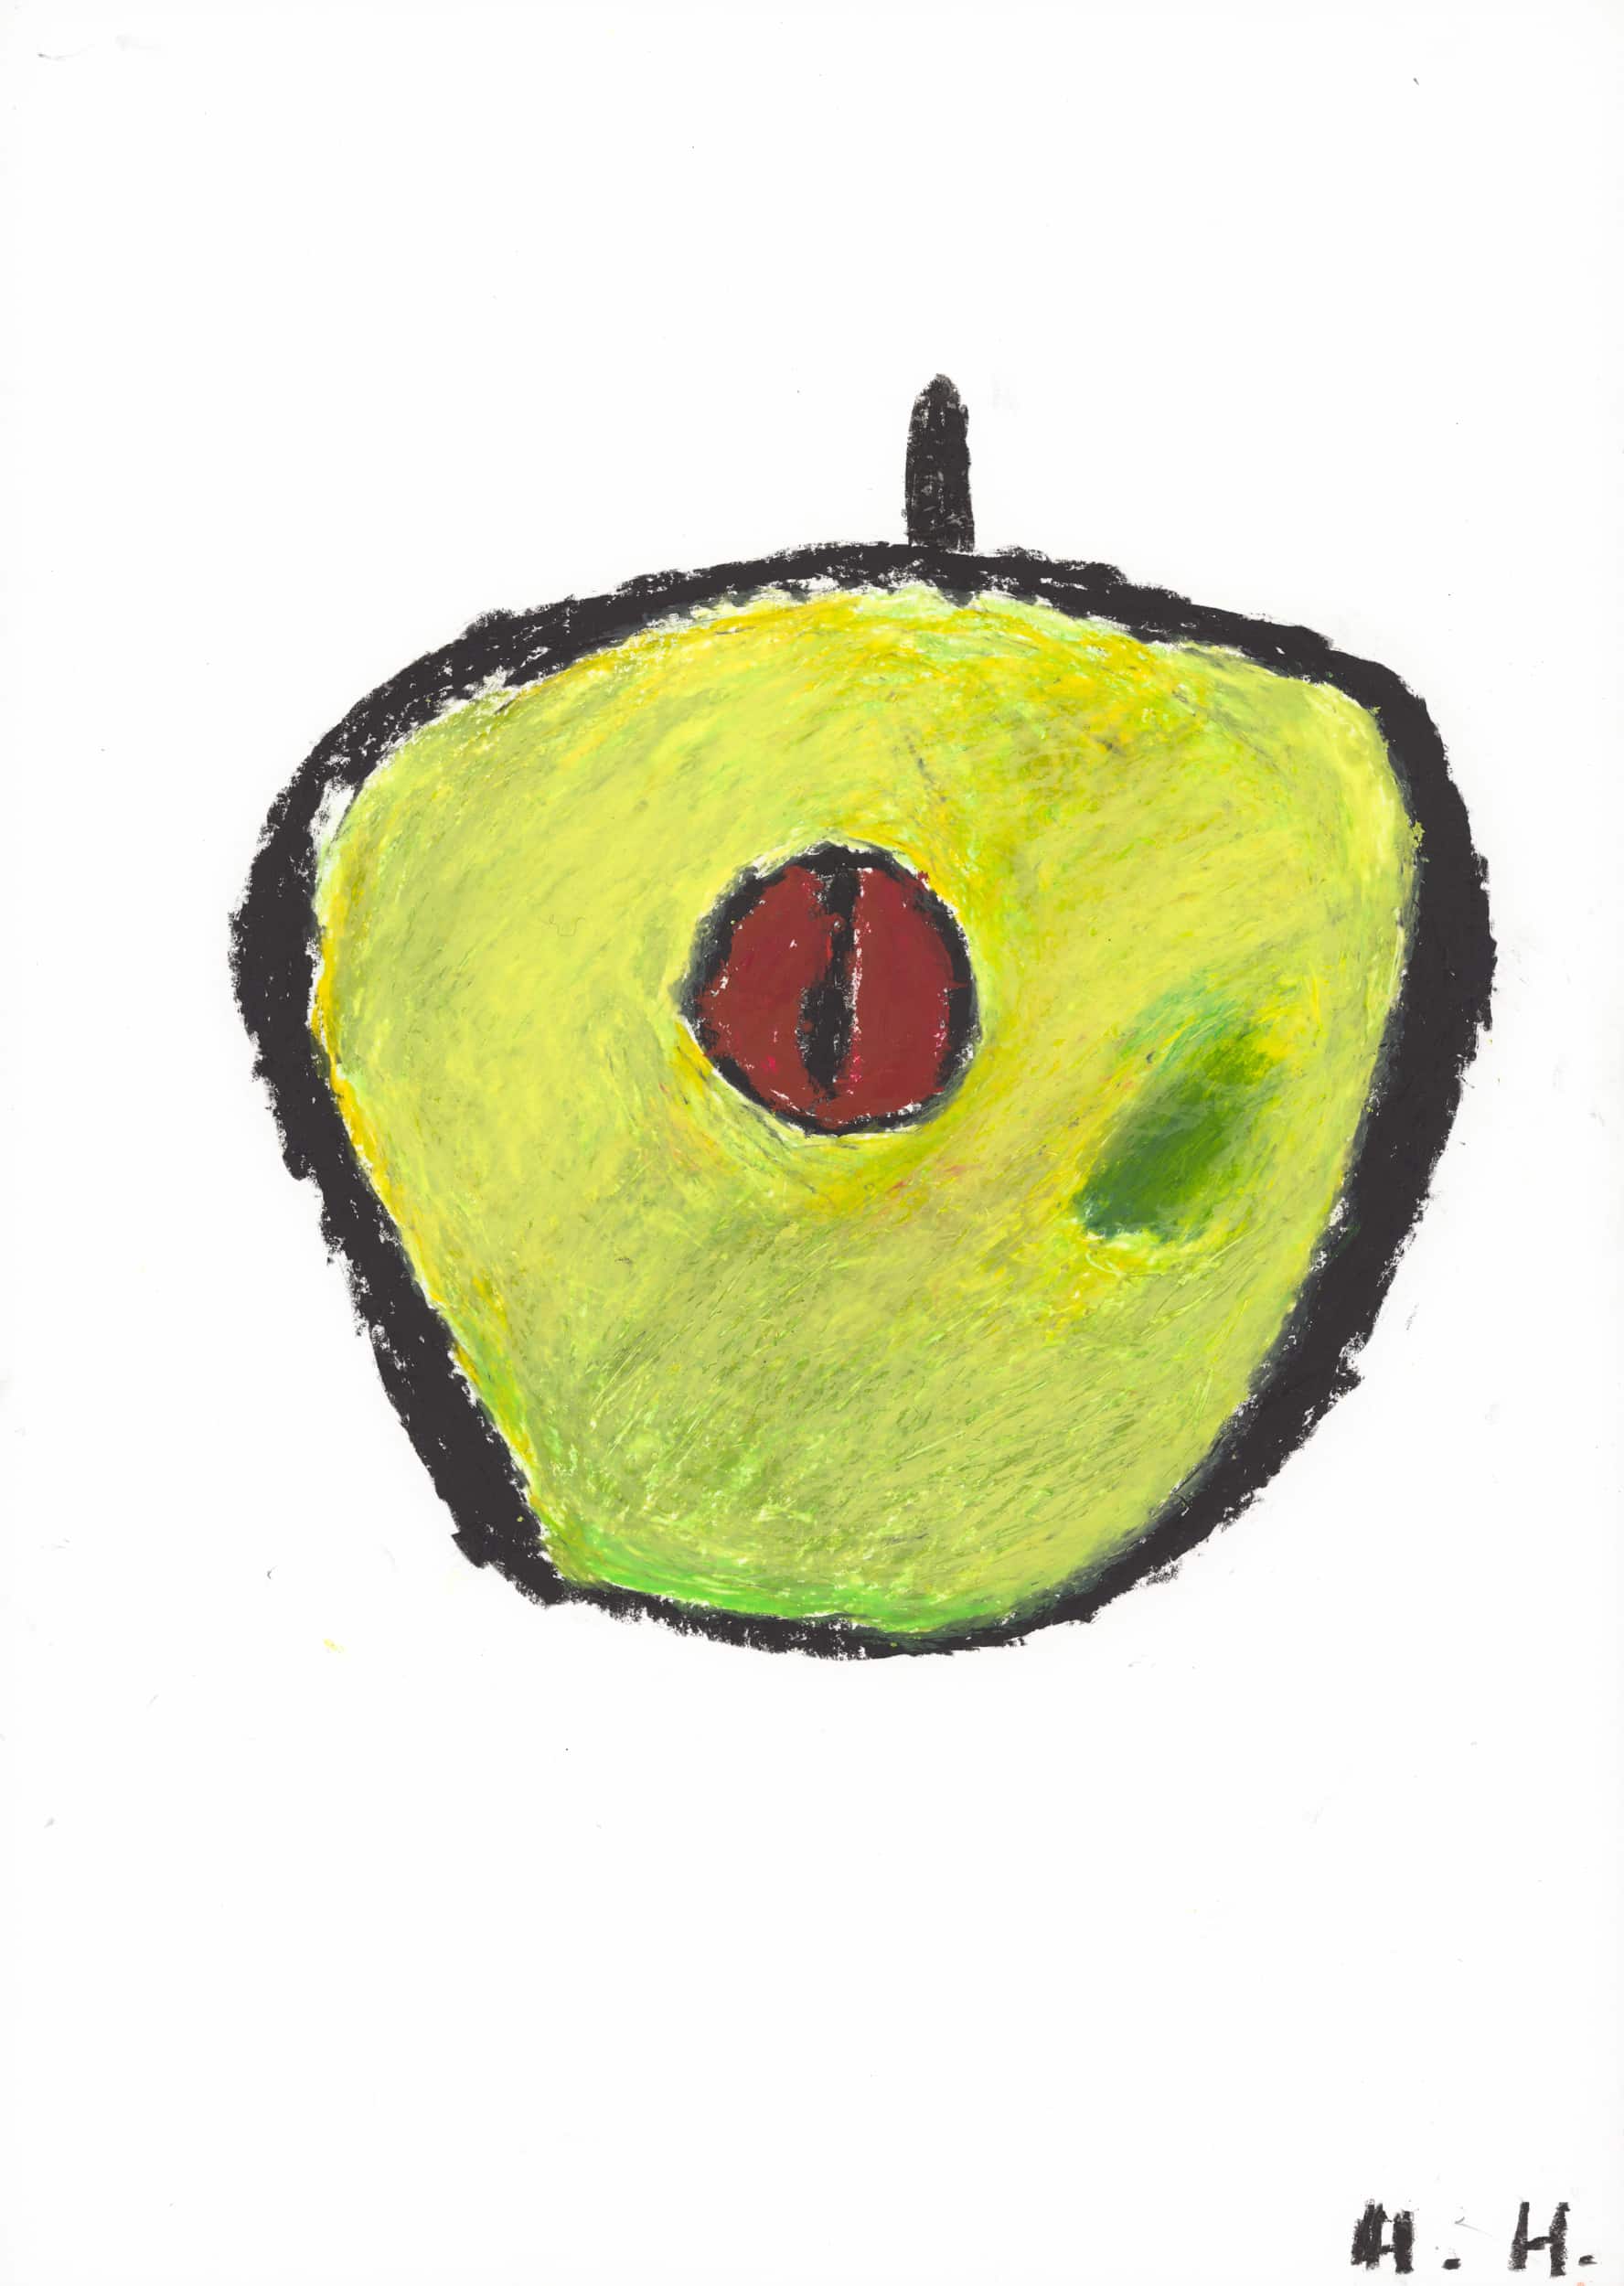 hladisch helmut - Apfel (Granny Smith) / Apple (Granny Smith)